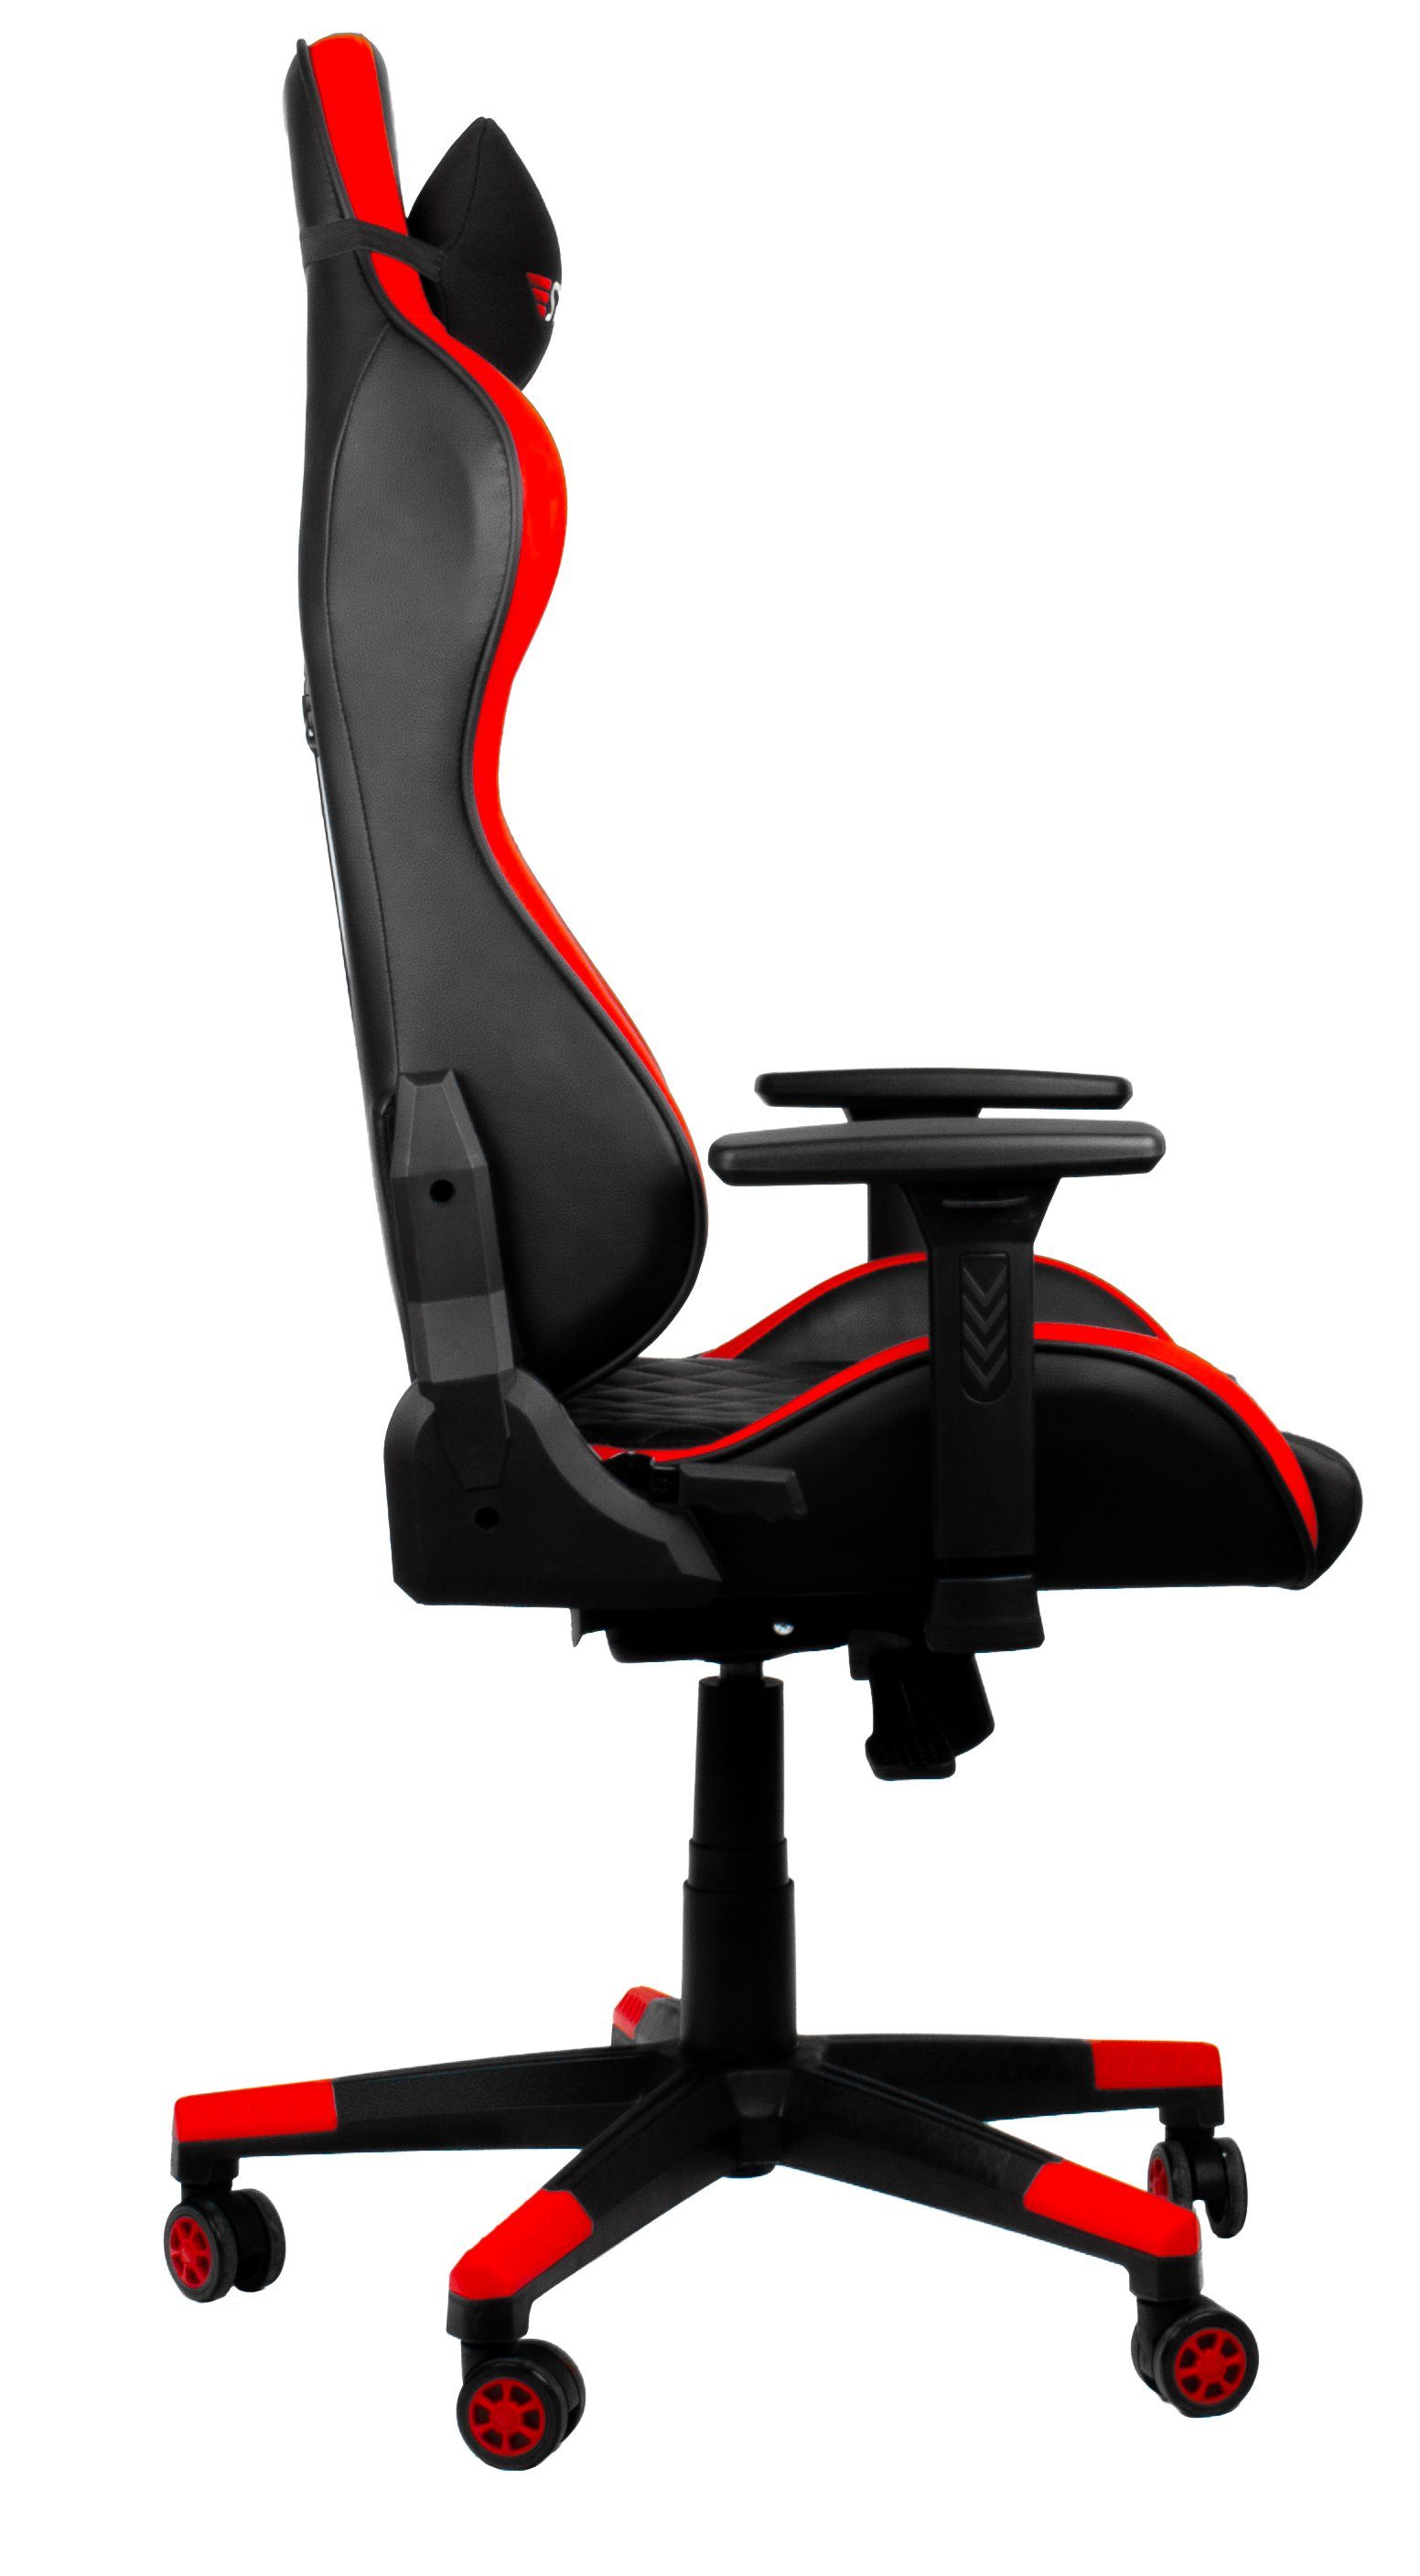 Hyrican Code Gamingstuhl,Schreibtischstuhl Red XL" ergonomischer "Striker Gaming-Stuhl